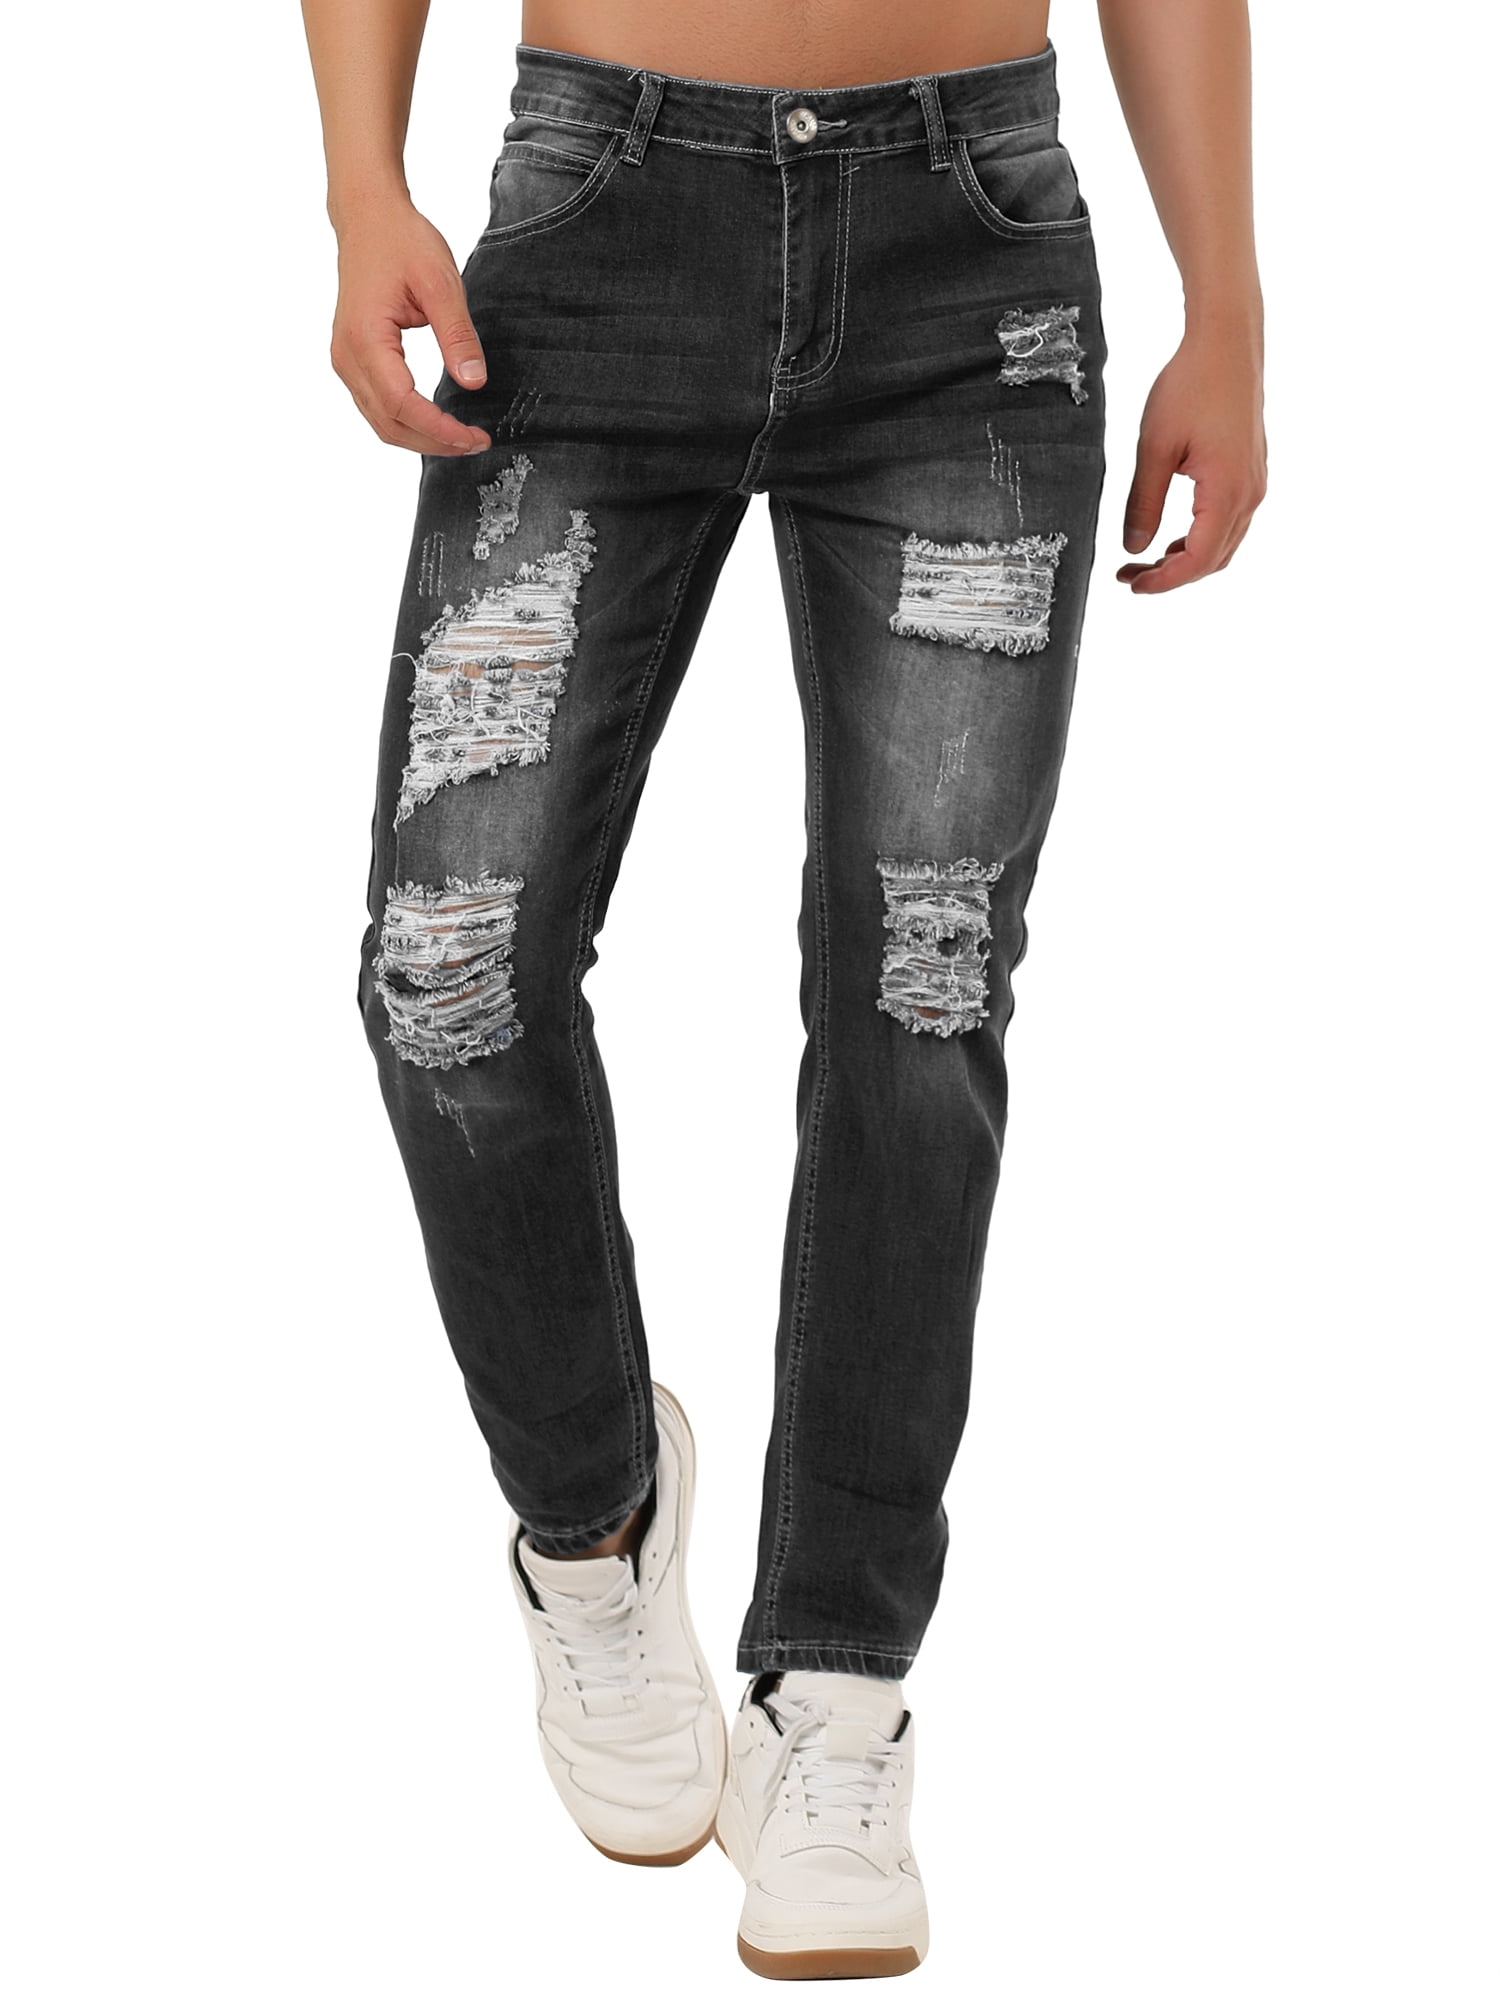 Dark Blue Color Denim Jeans For Mens at Rs.450/Piece in delhi offer by VRS  Fit Denim Jeans